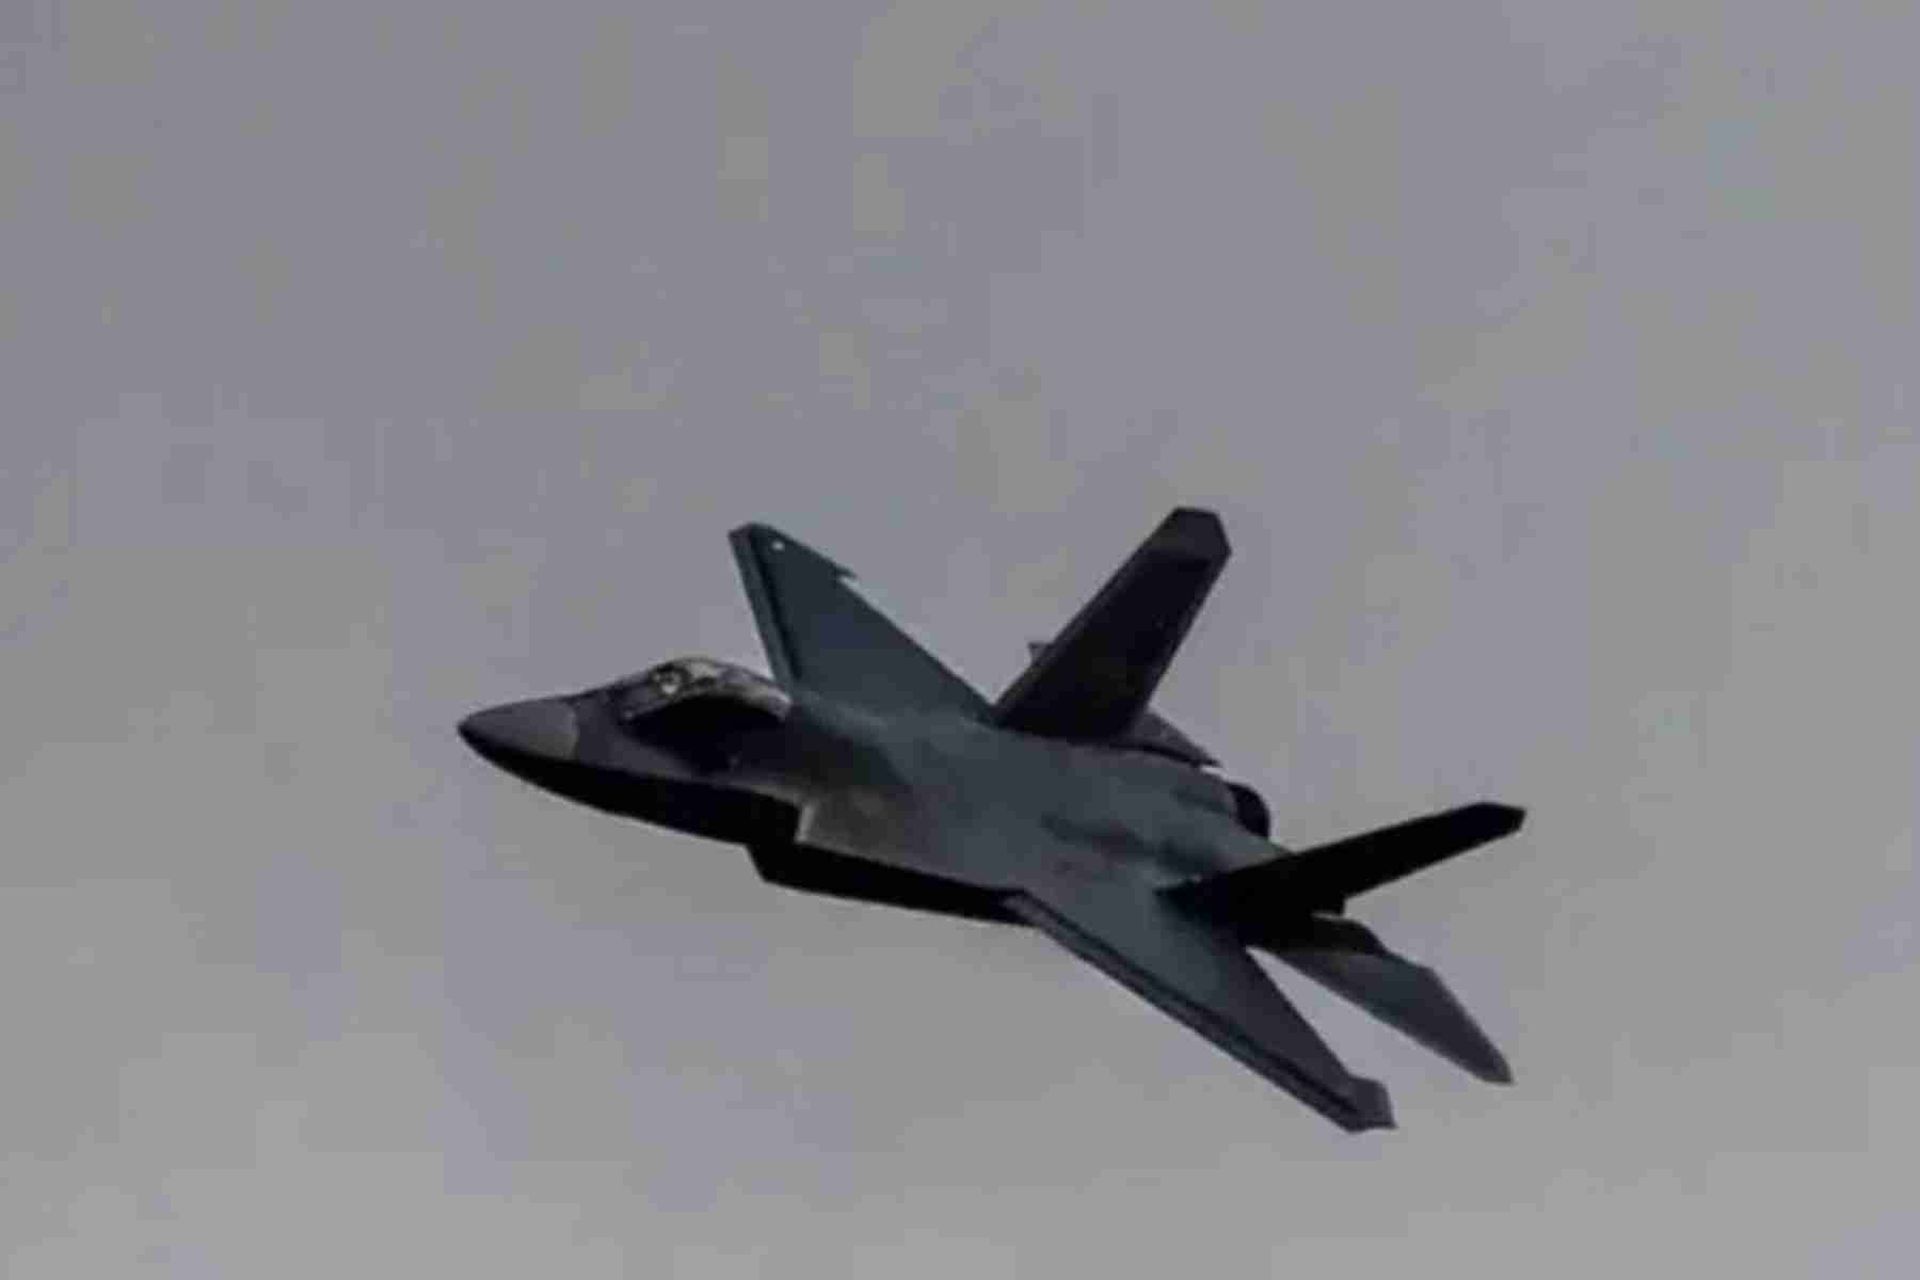 歼-31最新版验证机试飞照曝光。（微博@远途望君 ）